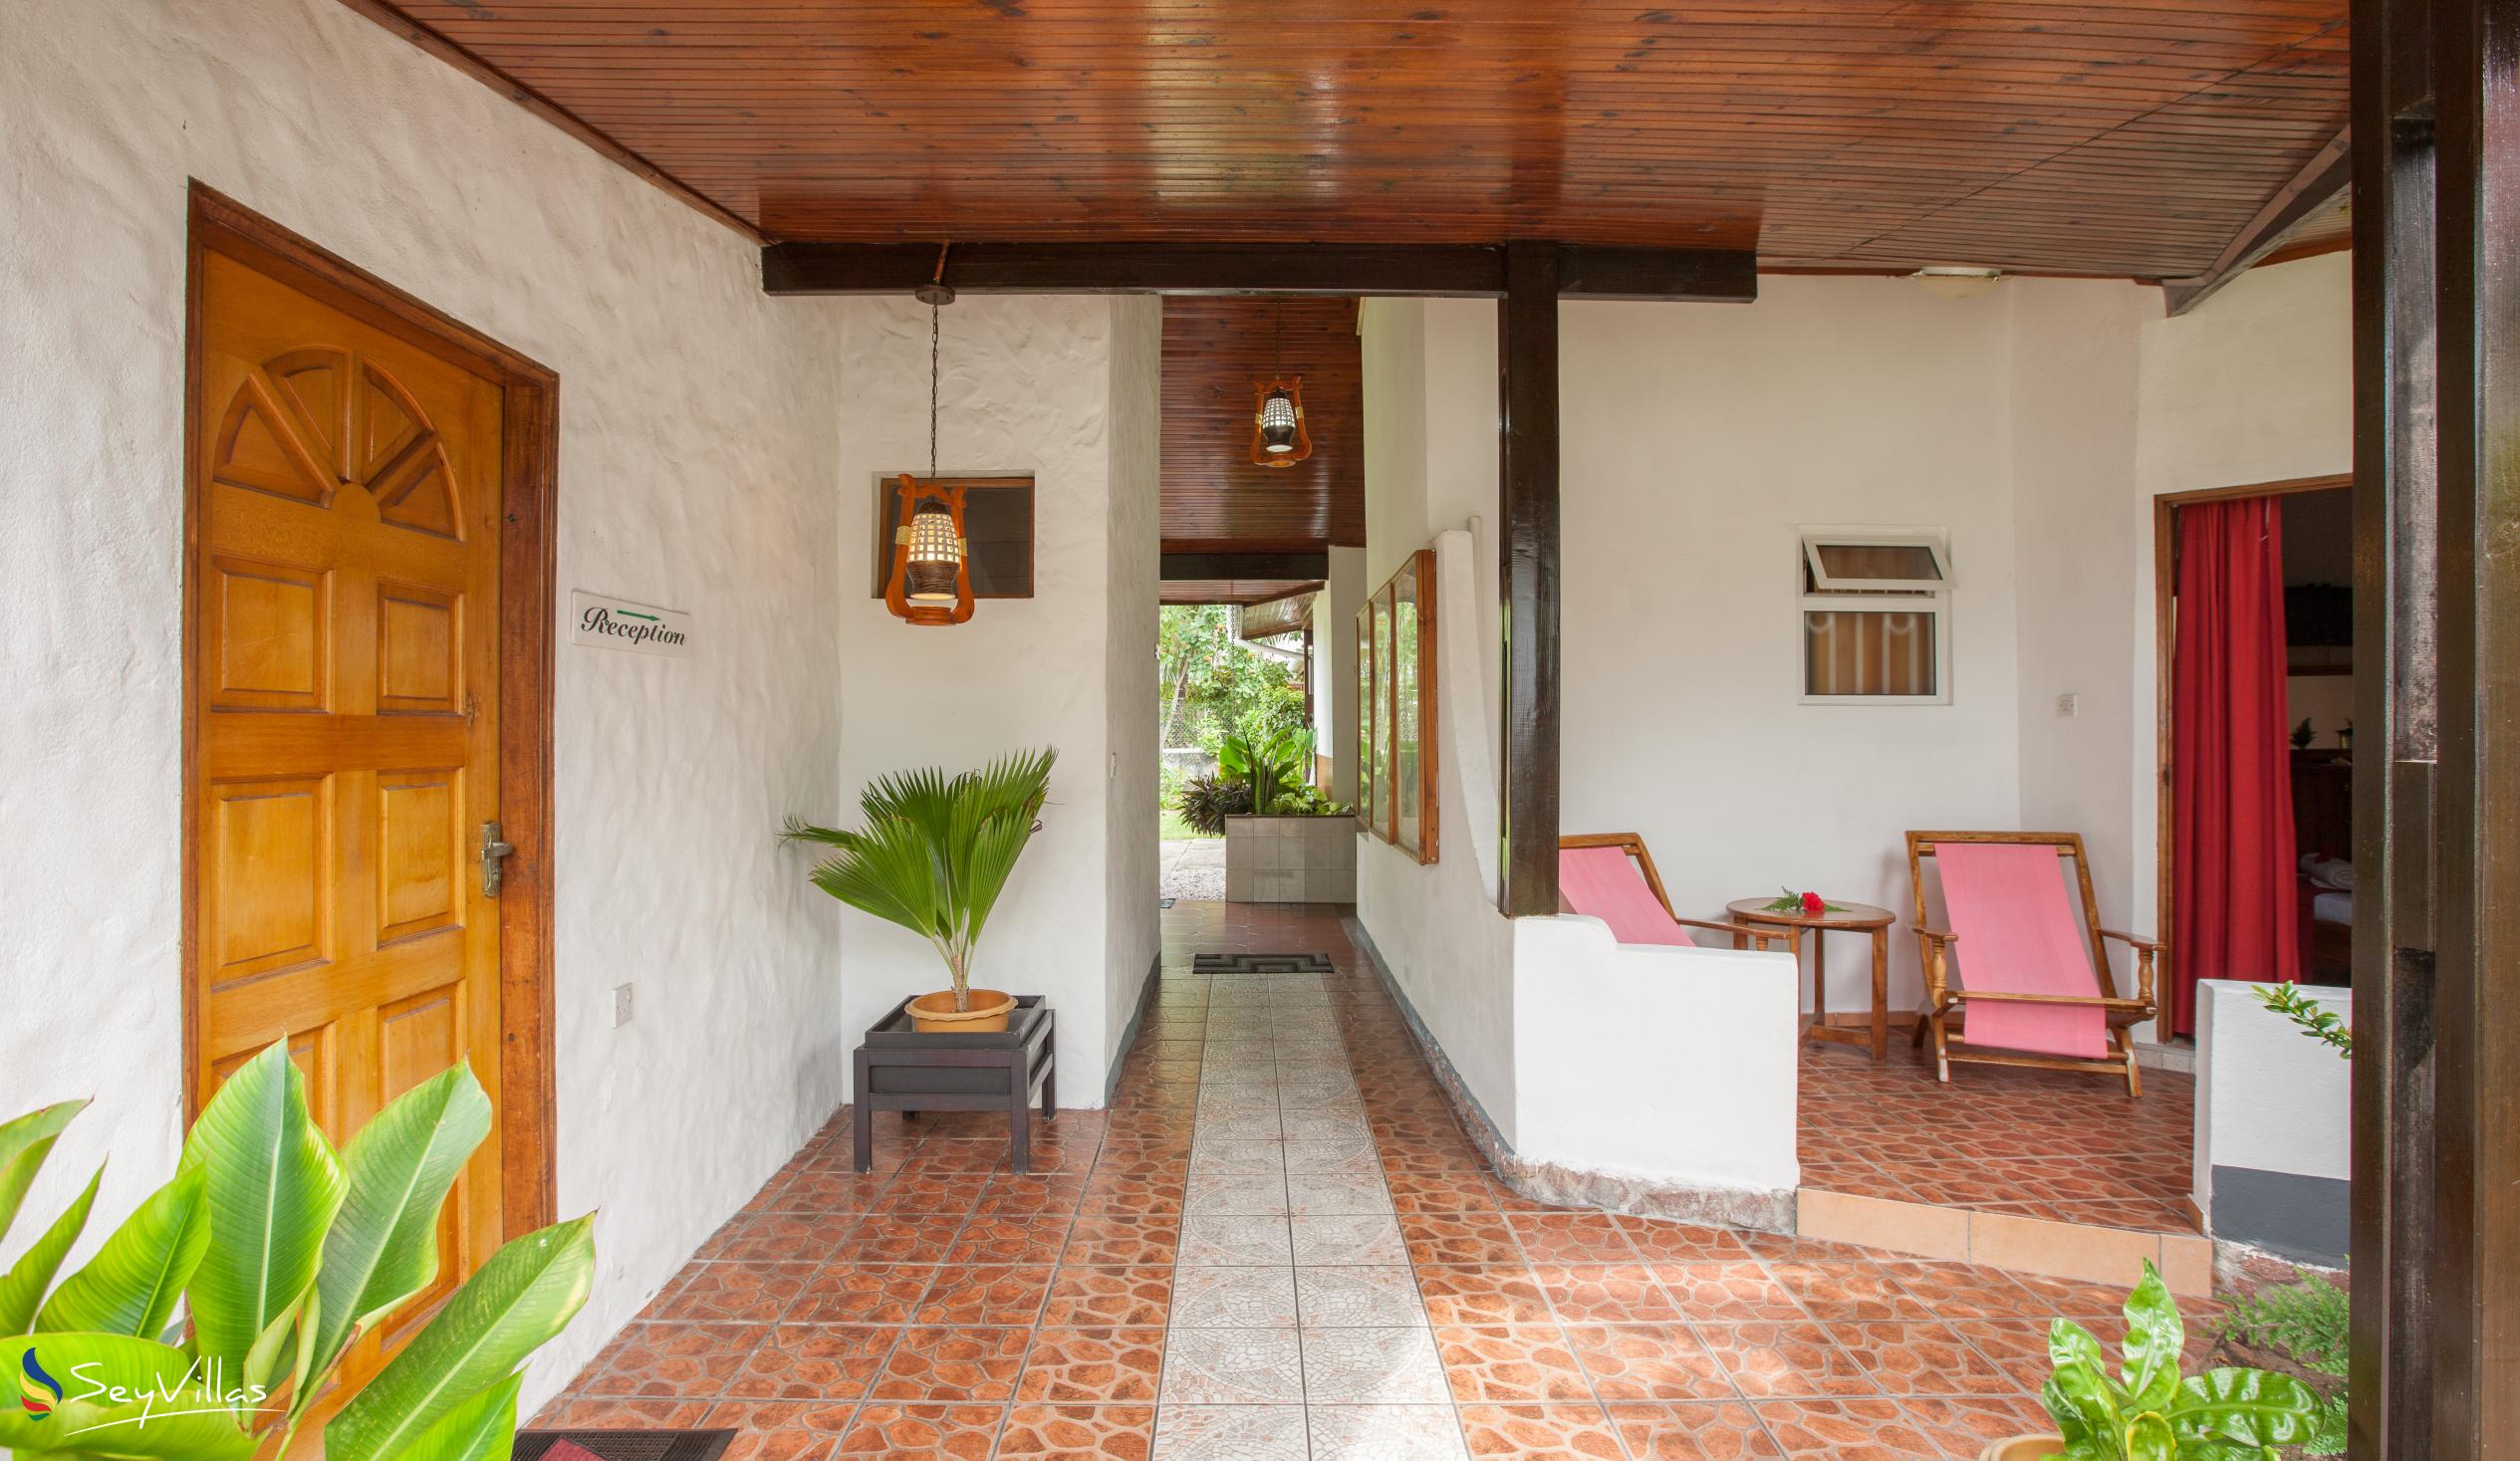 Foto 9: Beach Villa Guesthouse - Innenbereich - Praslin (Seychellen)